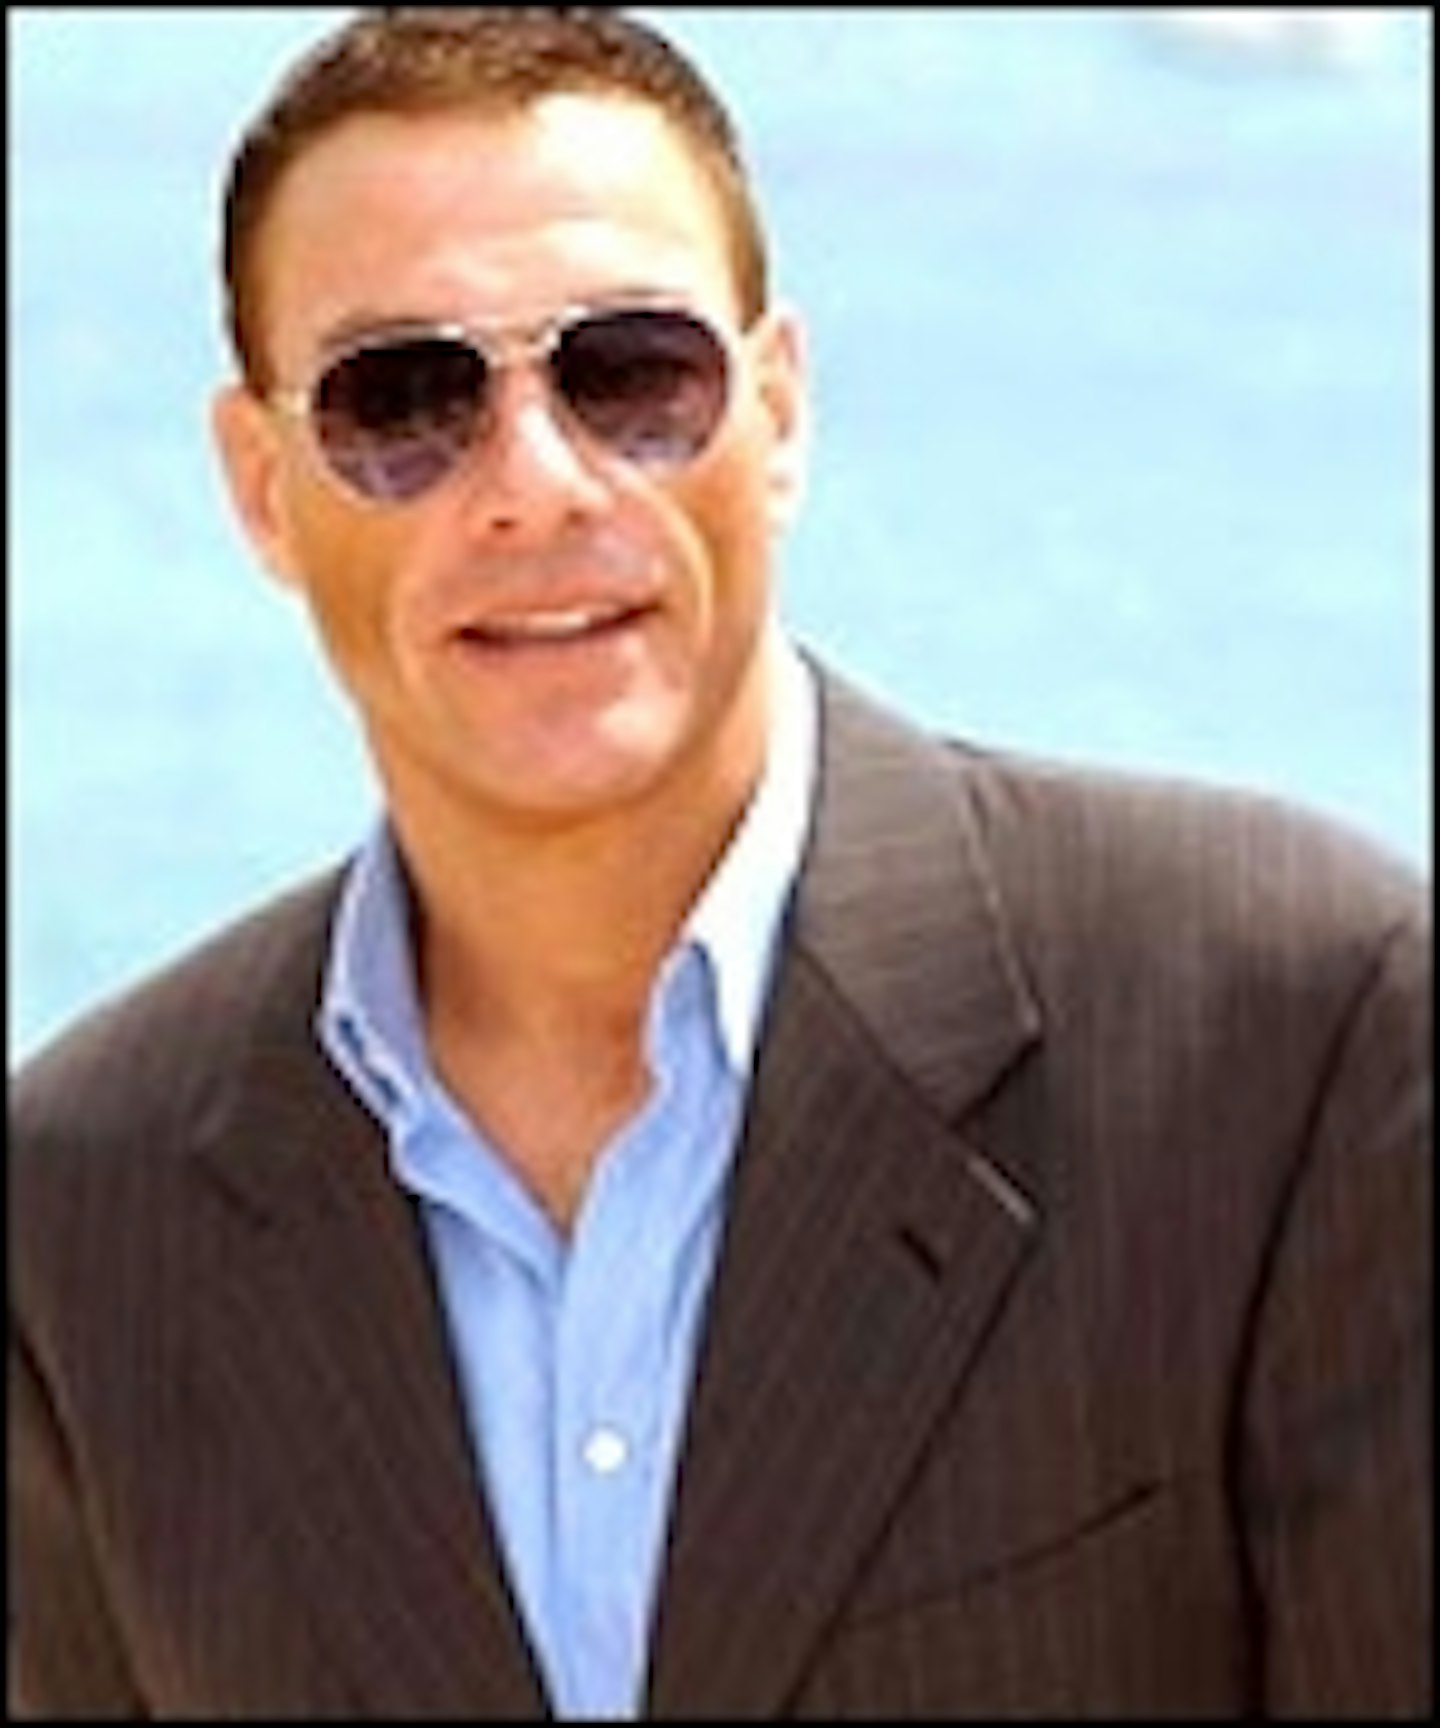 Jean-Claude Van Damme Set For The Kickboxer Remake